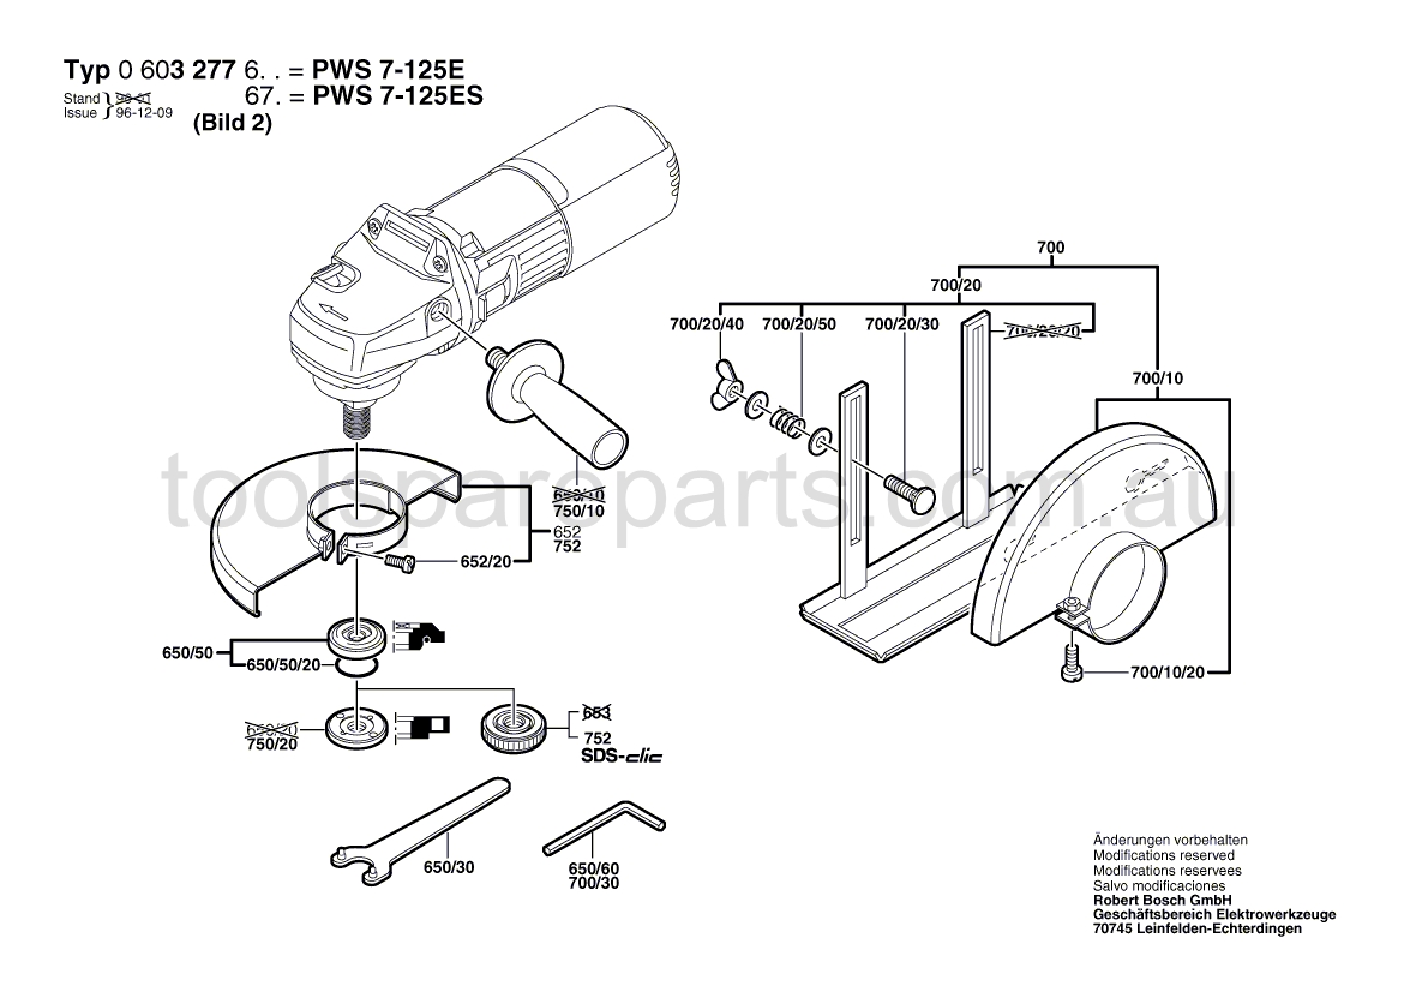 Bosch PWS 7-125 E 0603277637  Diagram 2